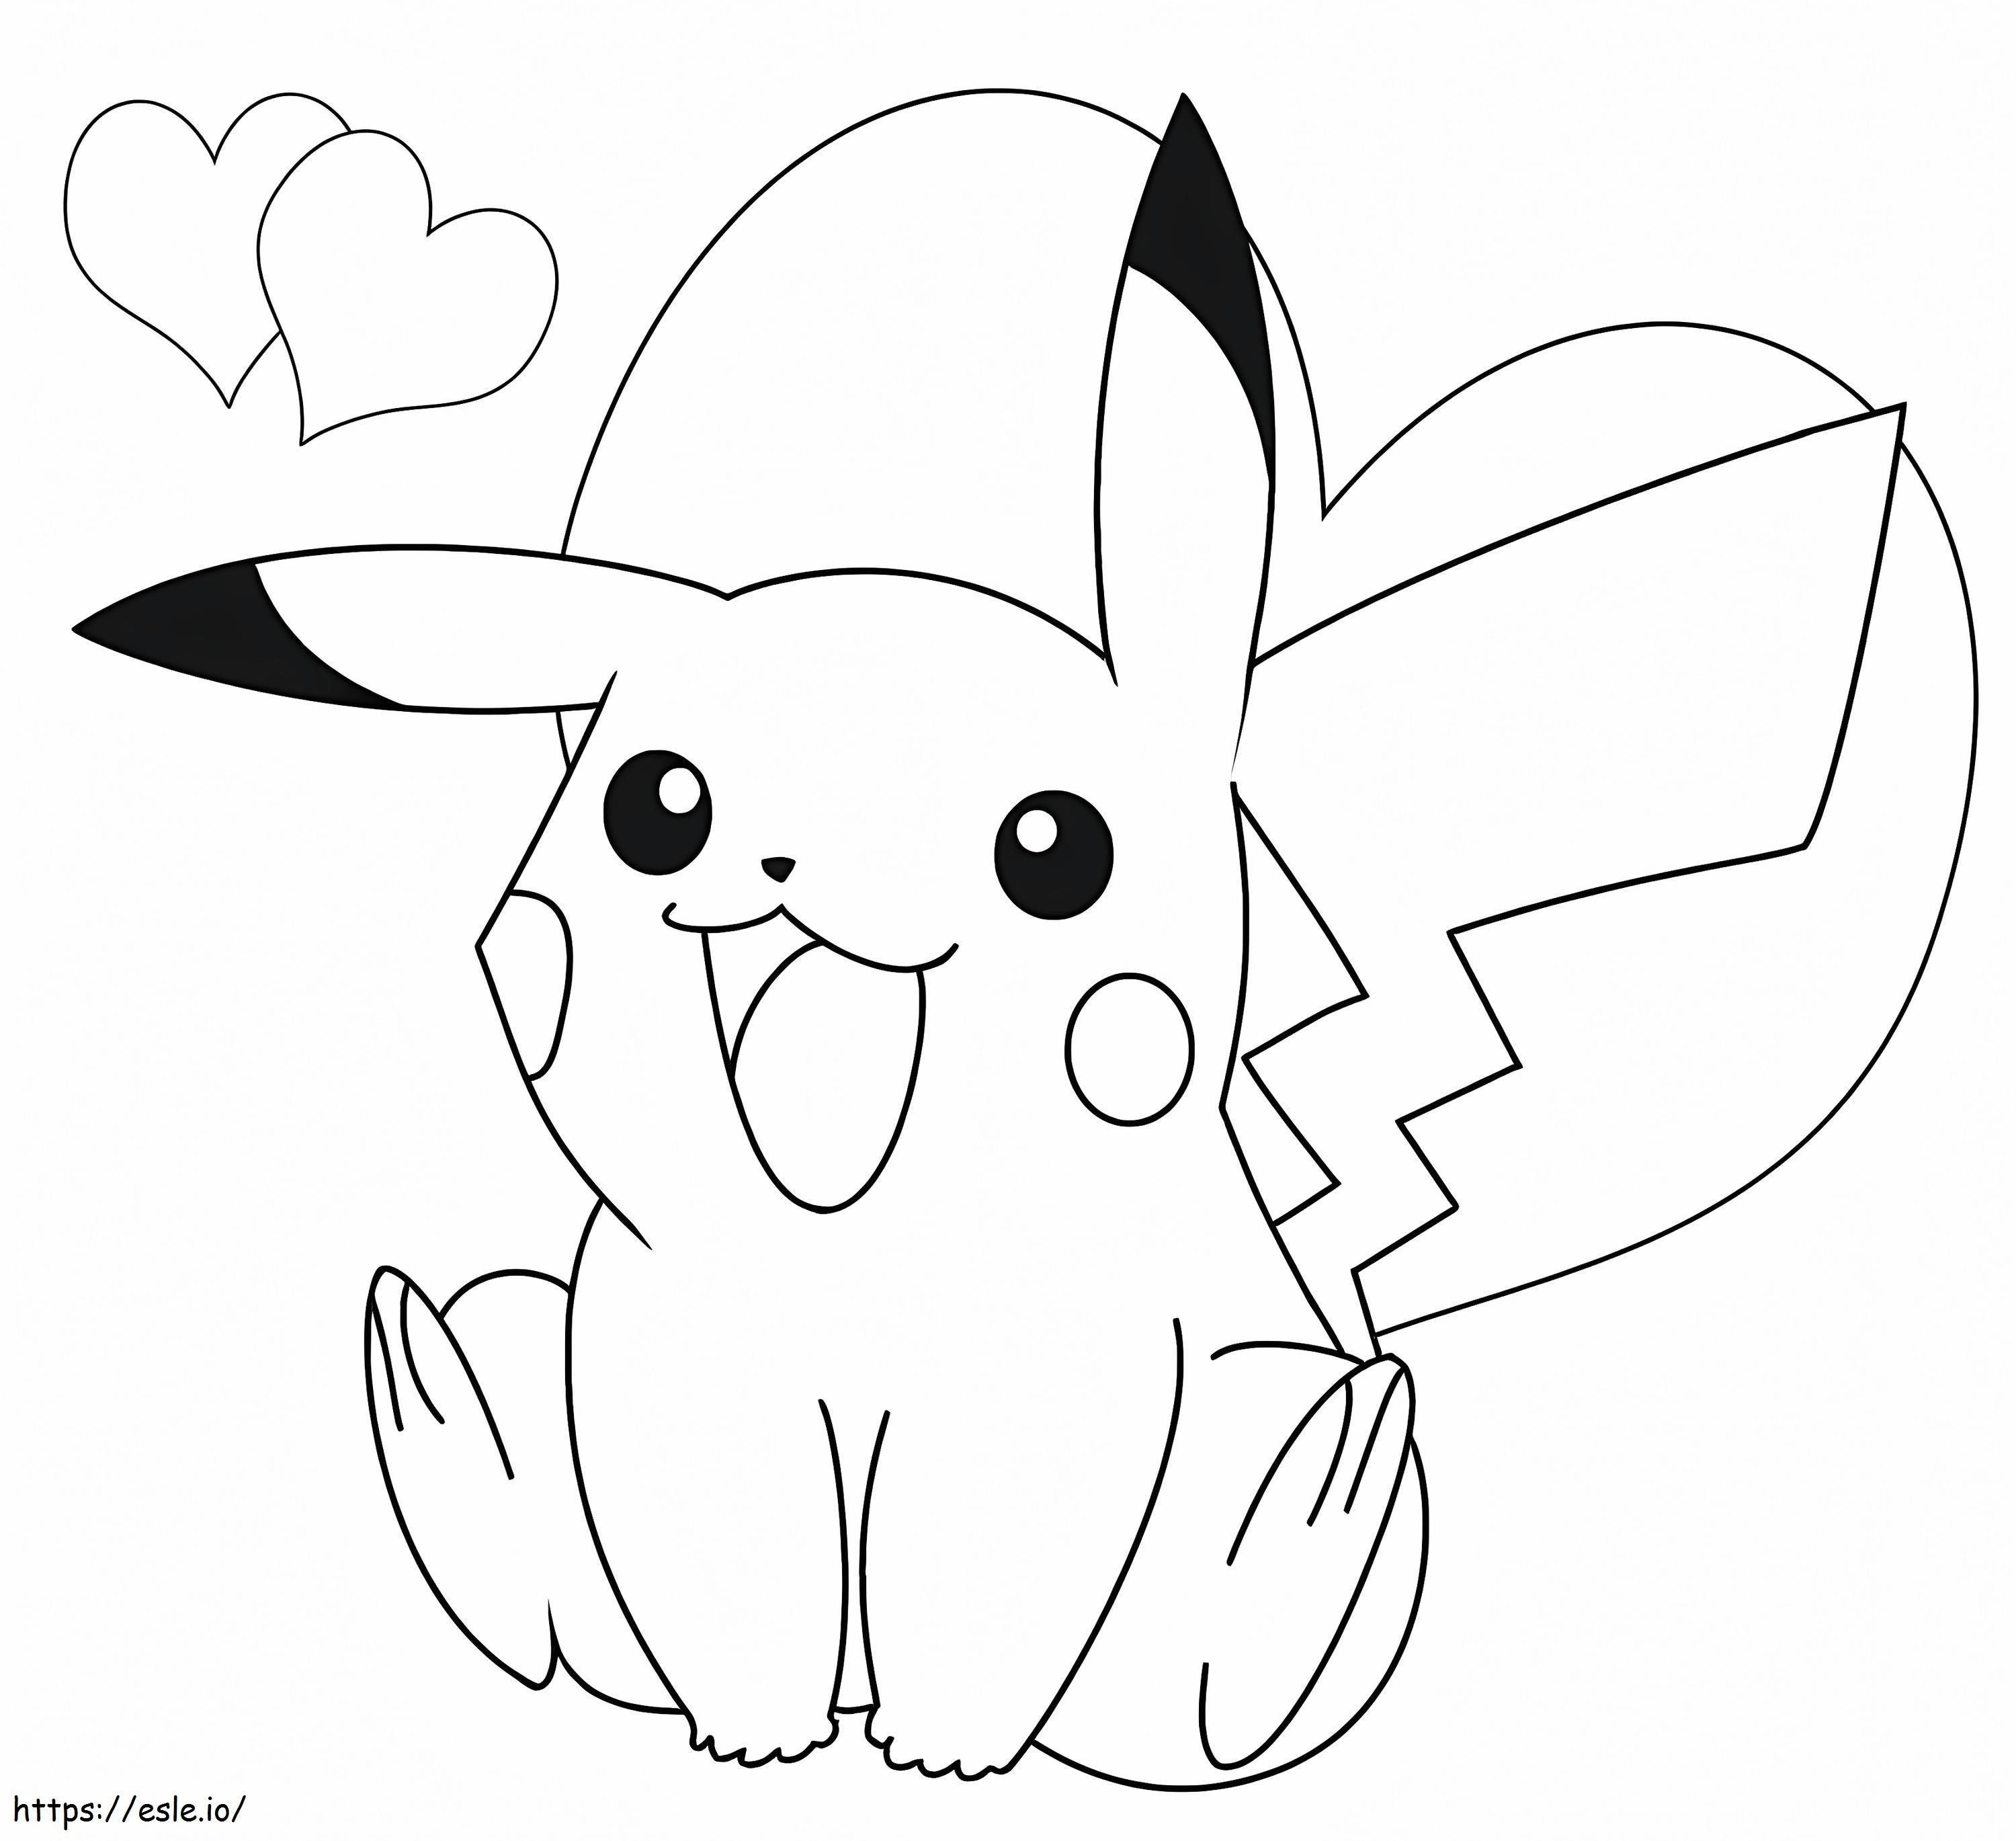 Desenhos do Pikachu para imprimir e colorir  Pikachu coloring page,  Pokemon coloring pages, Pokemon coloring